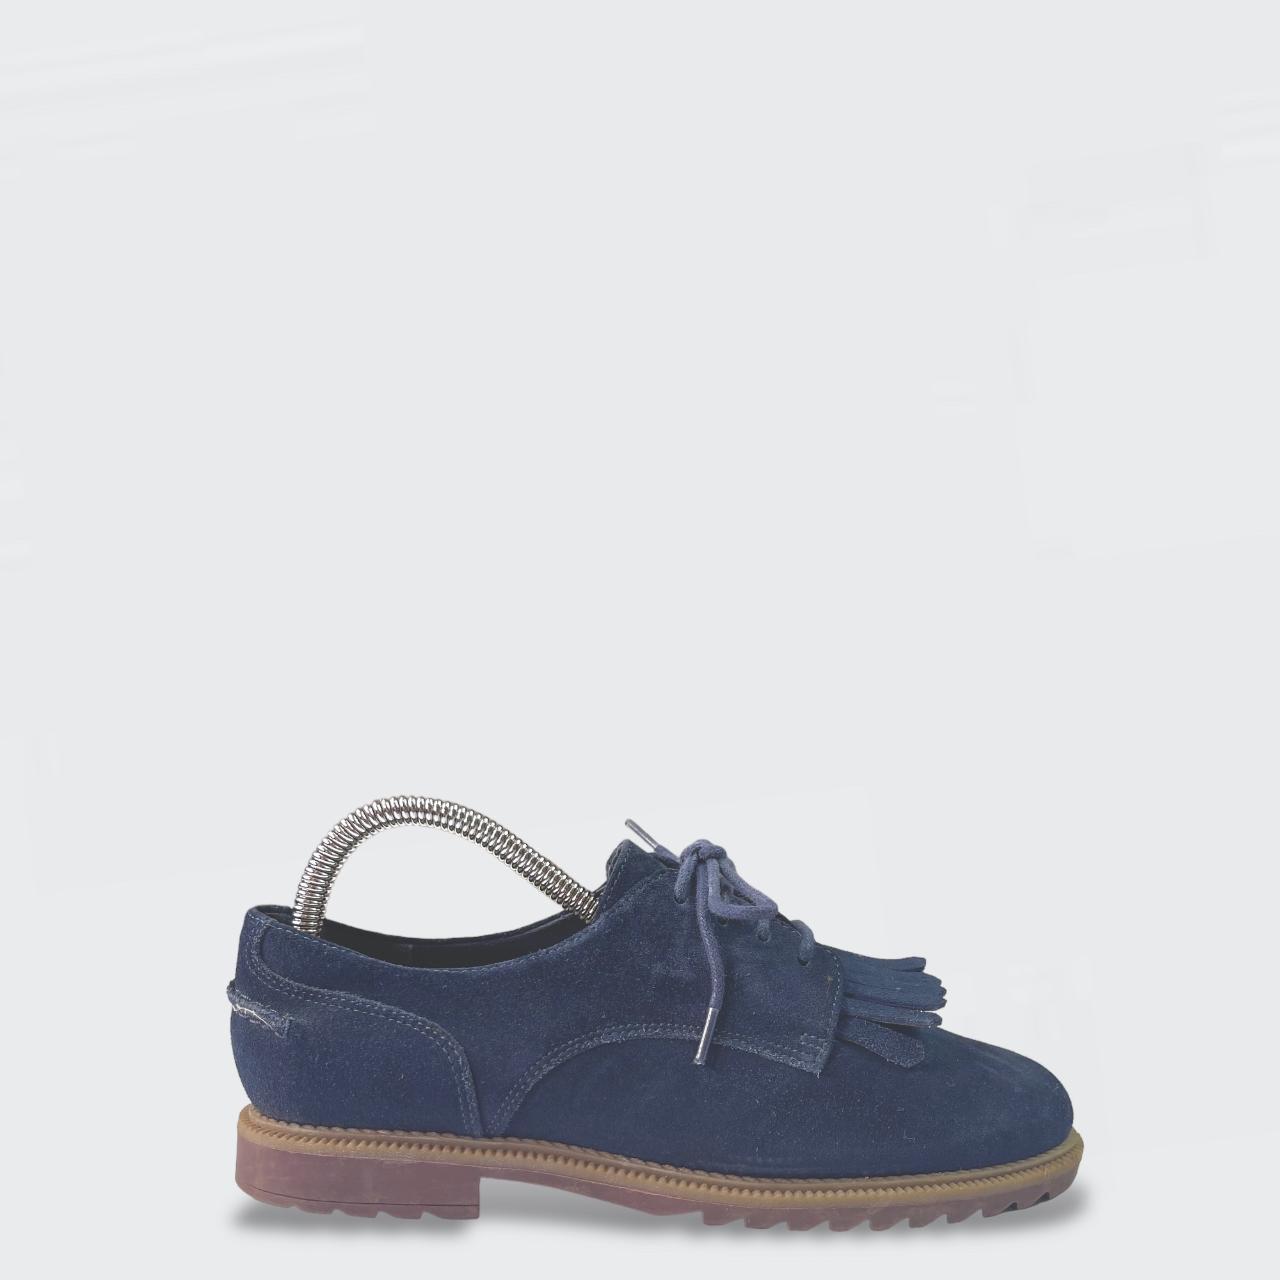 Clarks Somerset Griffin Fringe Suede Shoes - Size UK... - Depop